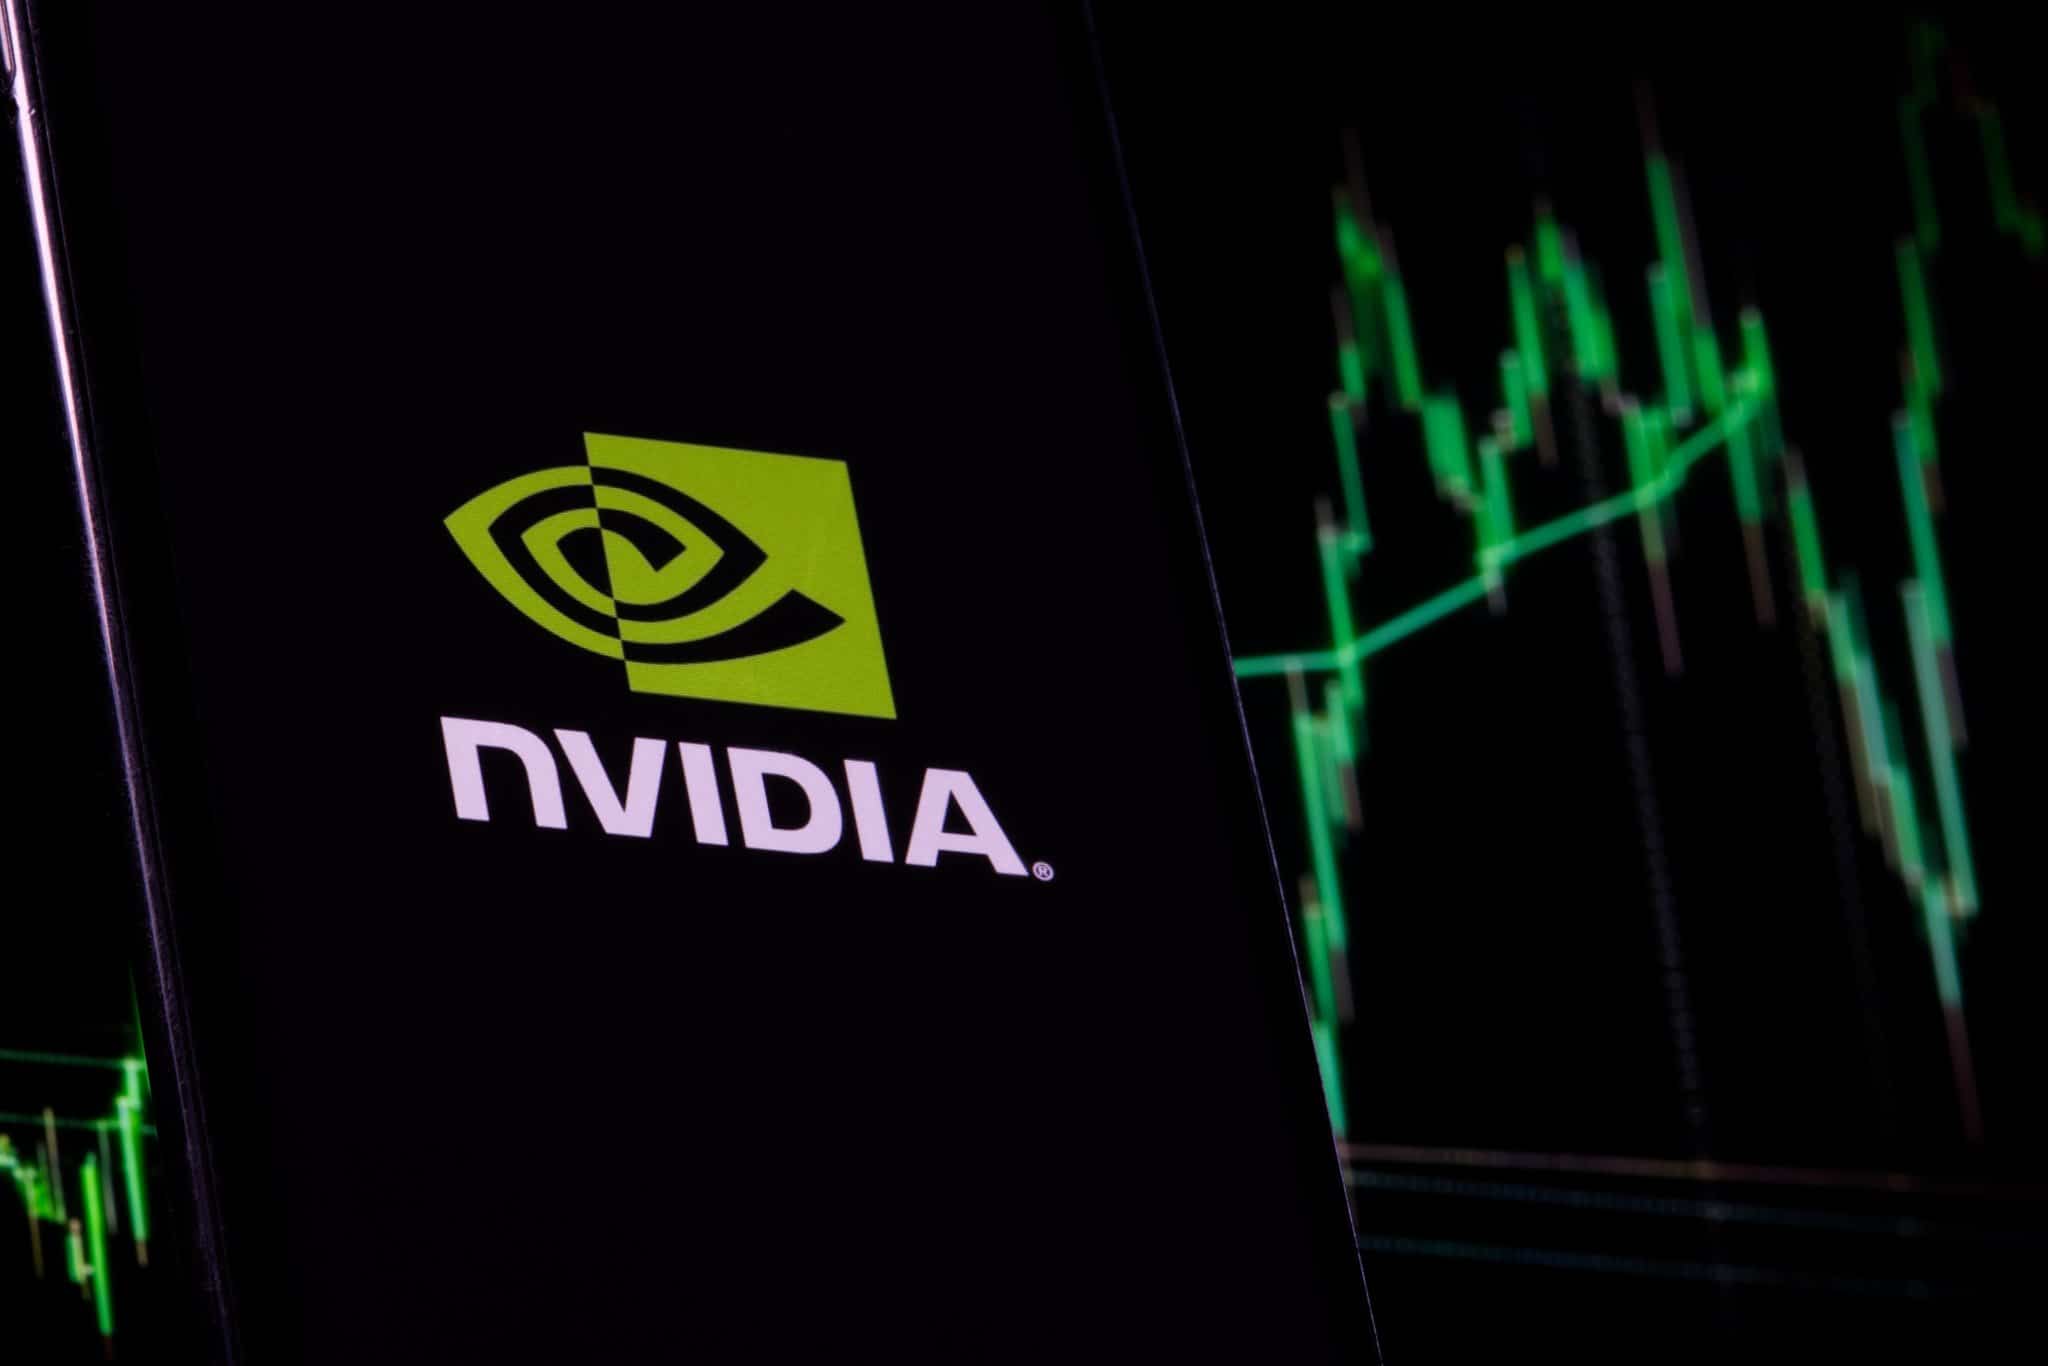 Nvidia ร่วงหนัก! จมดิ่งสู่จุดต่ำสุดนับตั้งแต่มีนาคม 2020